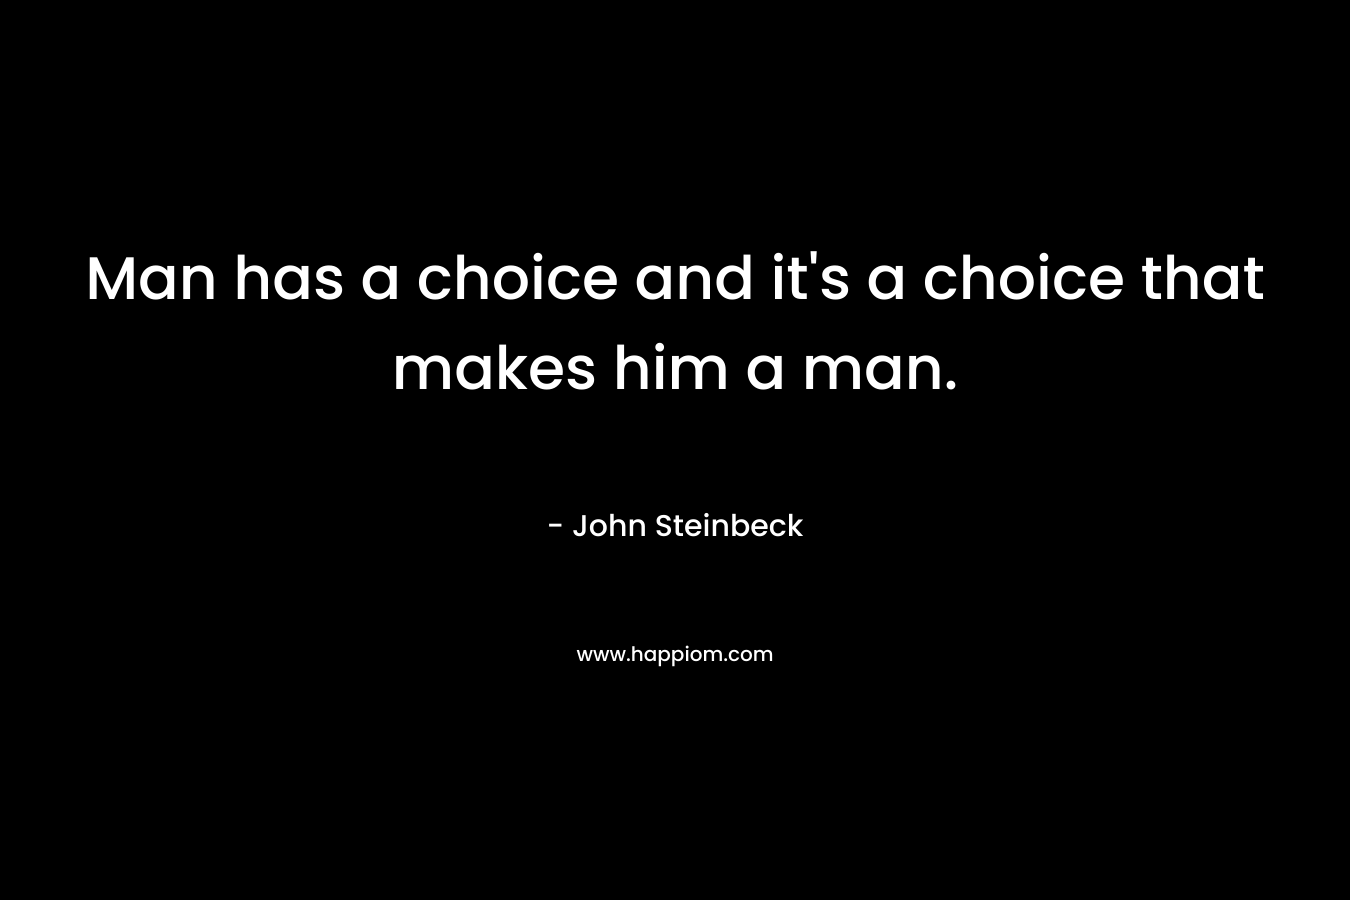 Man has a choice and it's a choice that makes him a man.